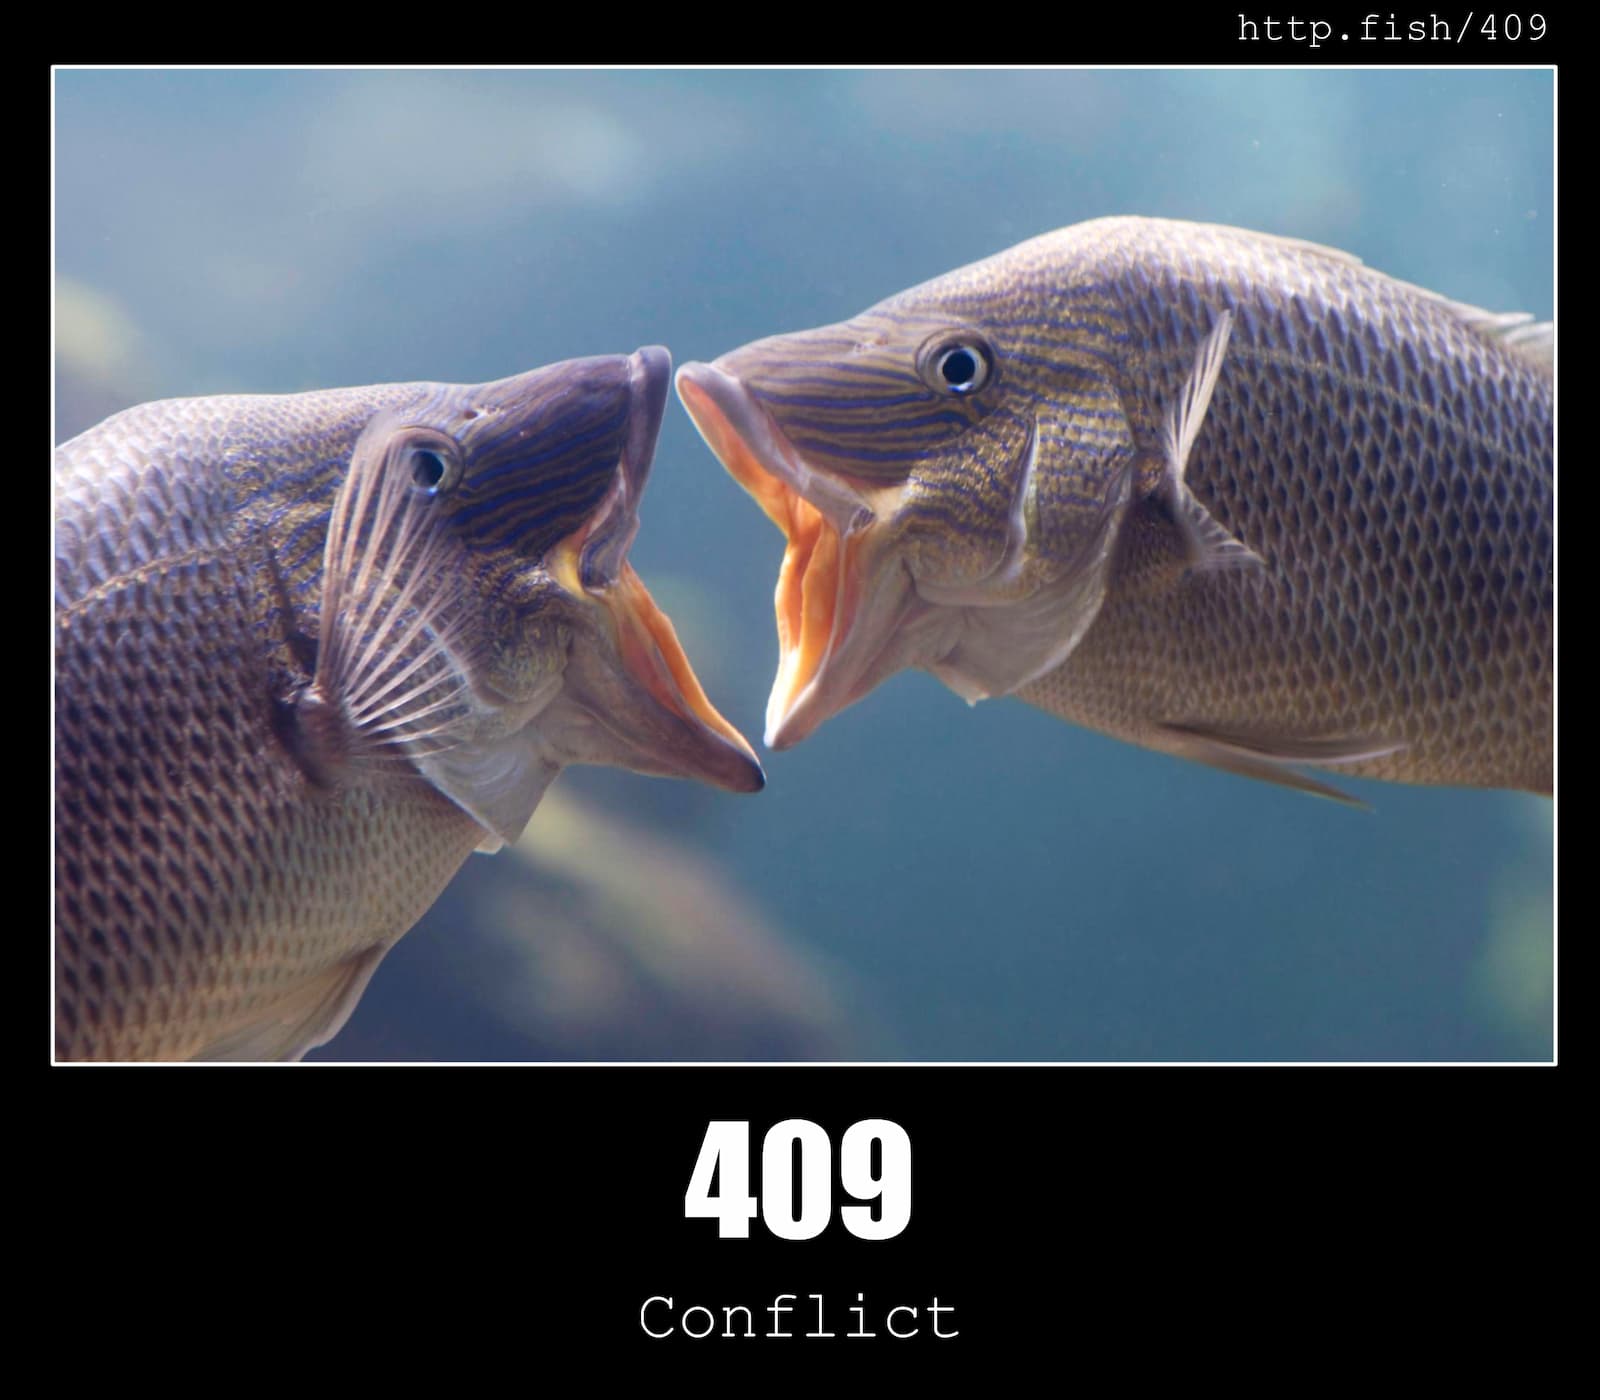 HTTP Status Code 409 Conflict & Fish